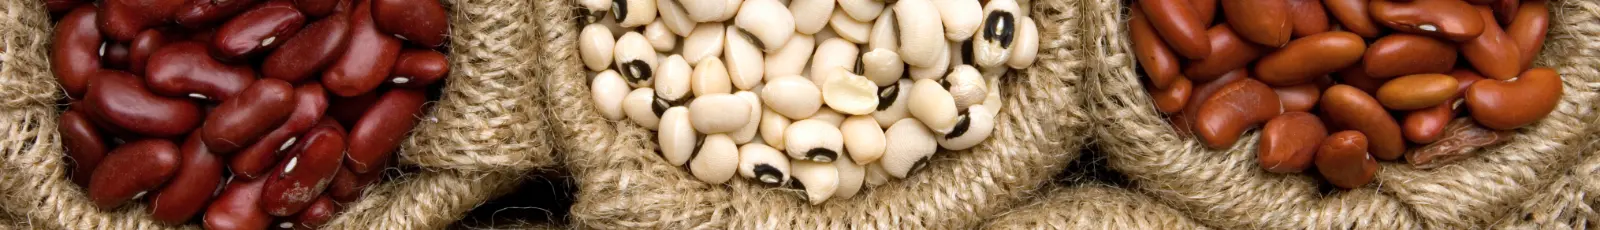 Beans in burlap